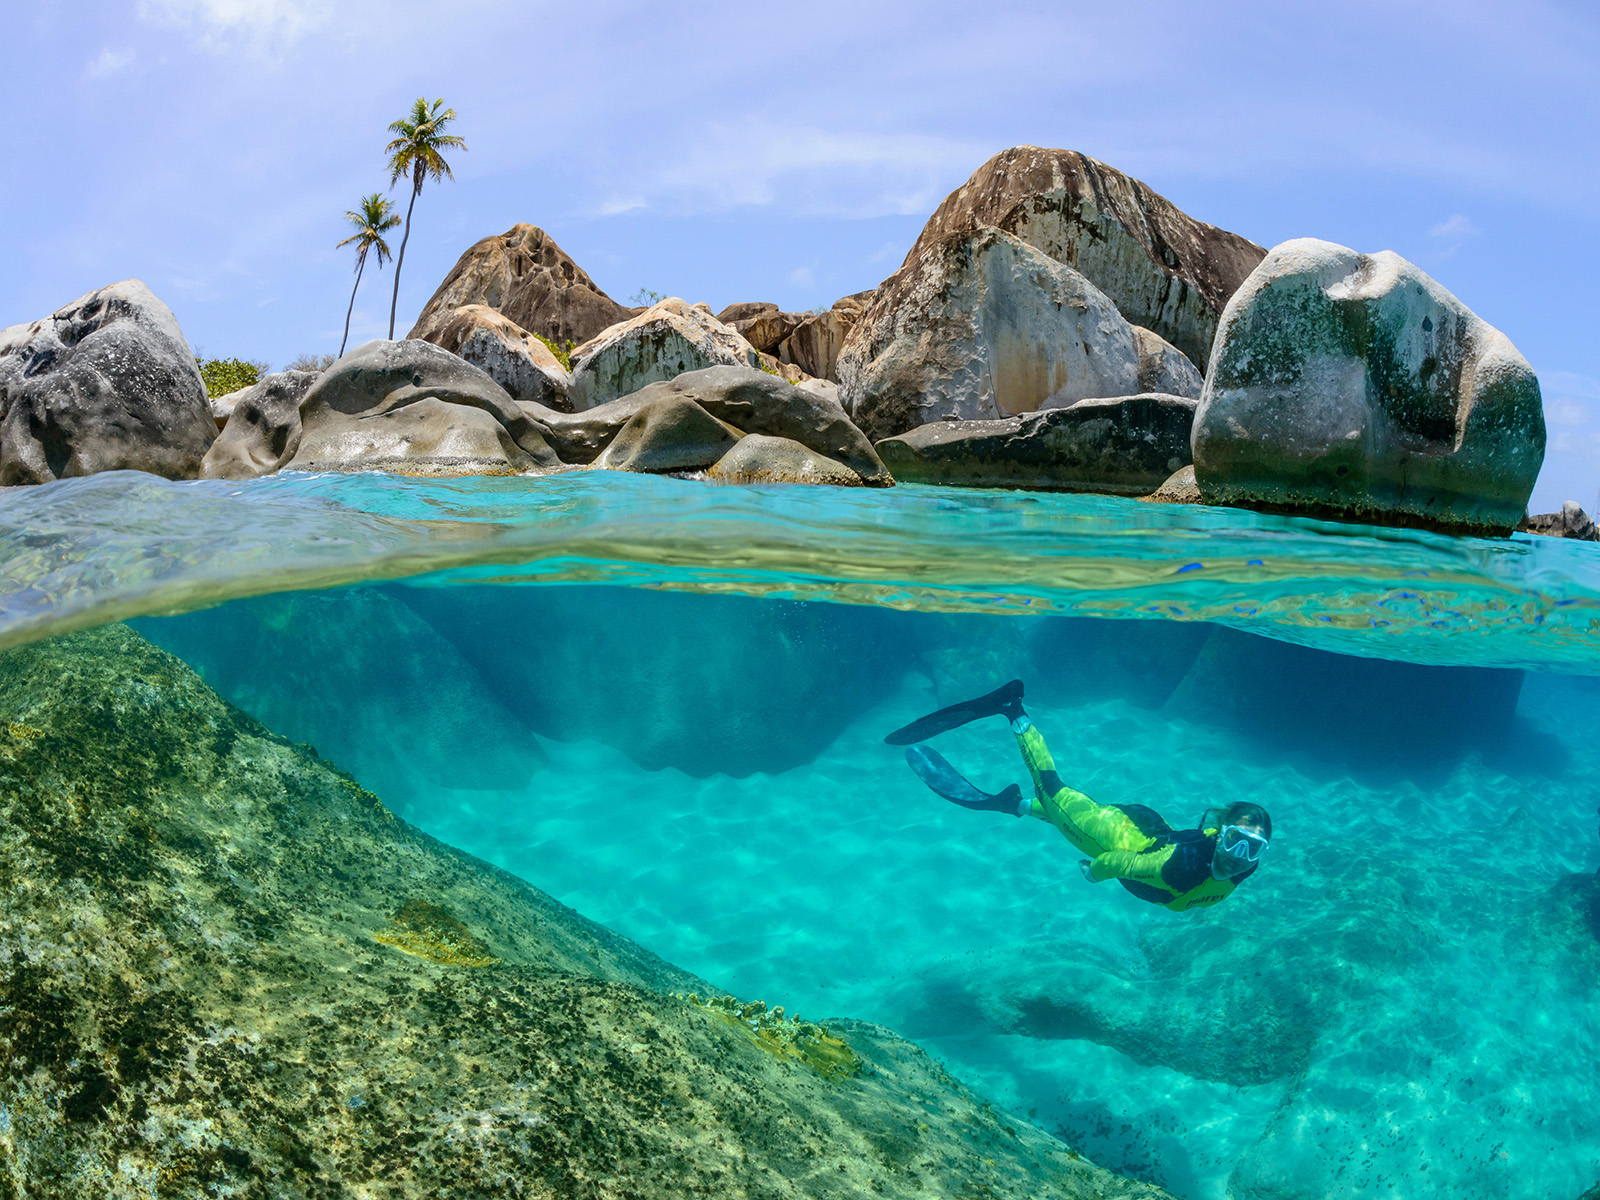 Snorkeler underwater in front of large granite boulders